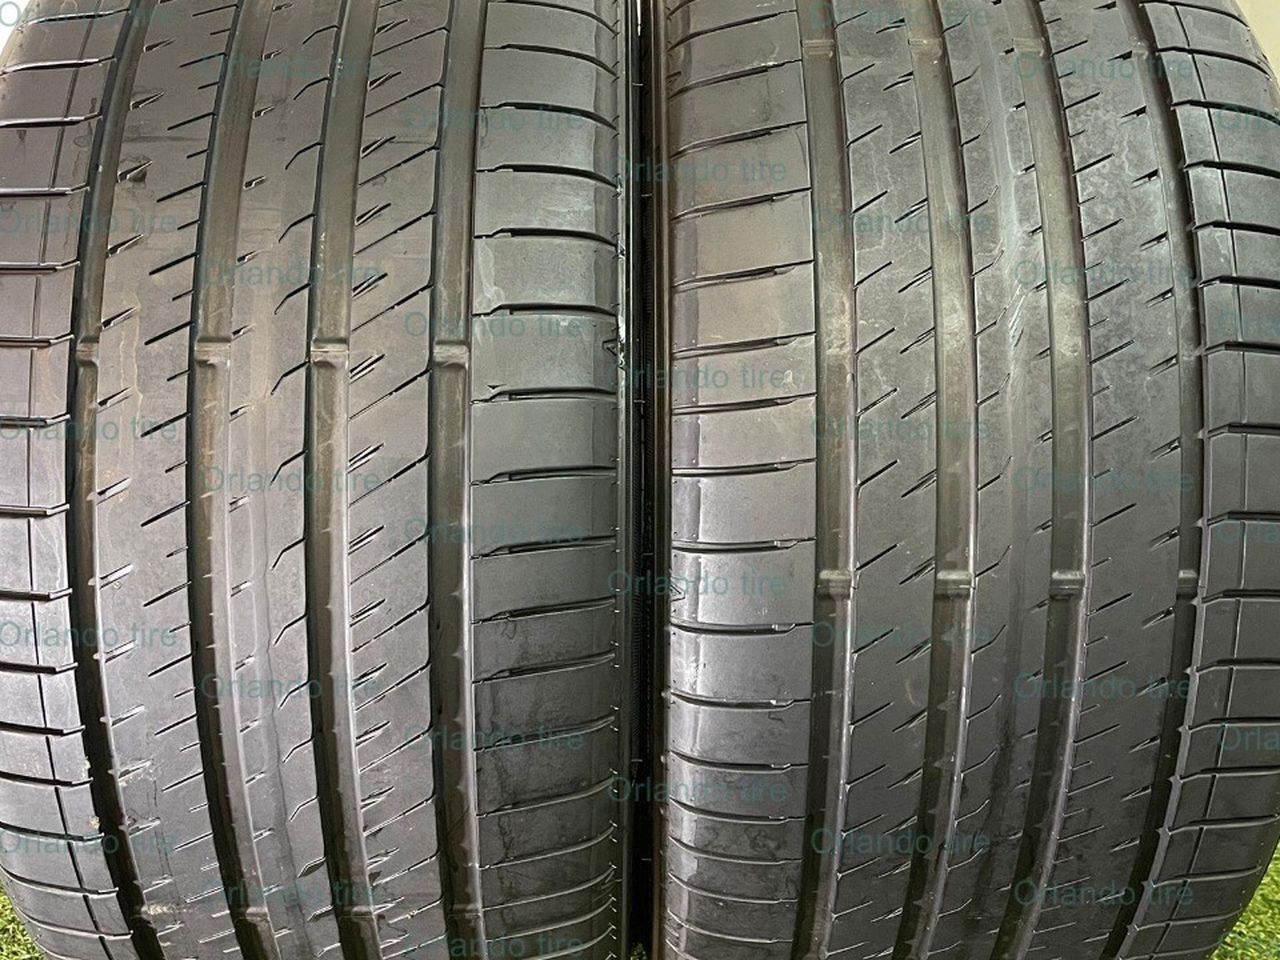 D47  285 35 18 101Y  Sumitomo  HTR Z5 - 2 Used Tires  70% Life 